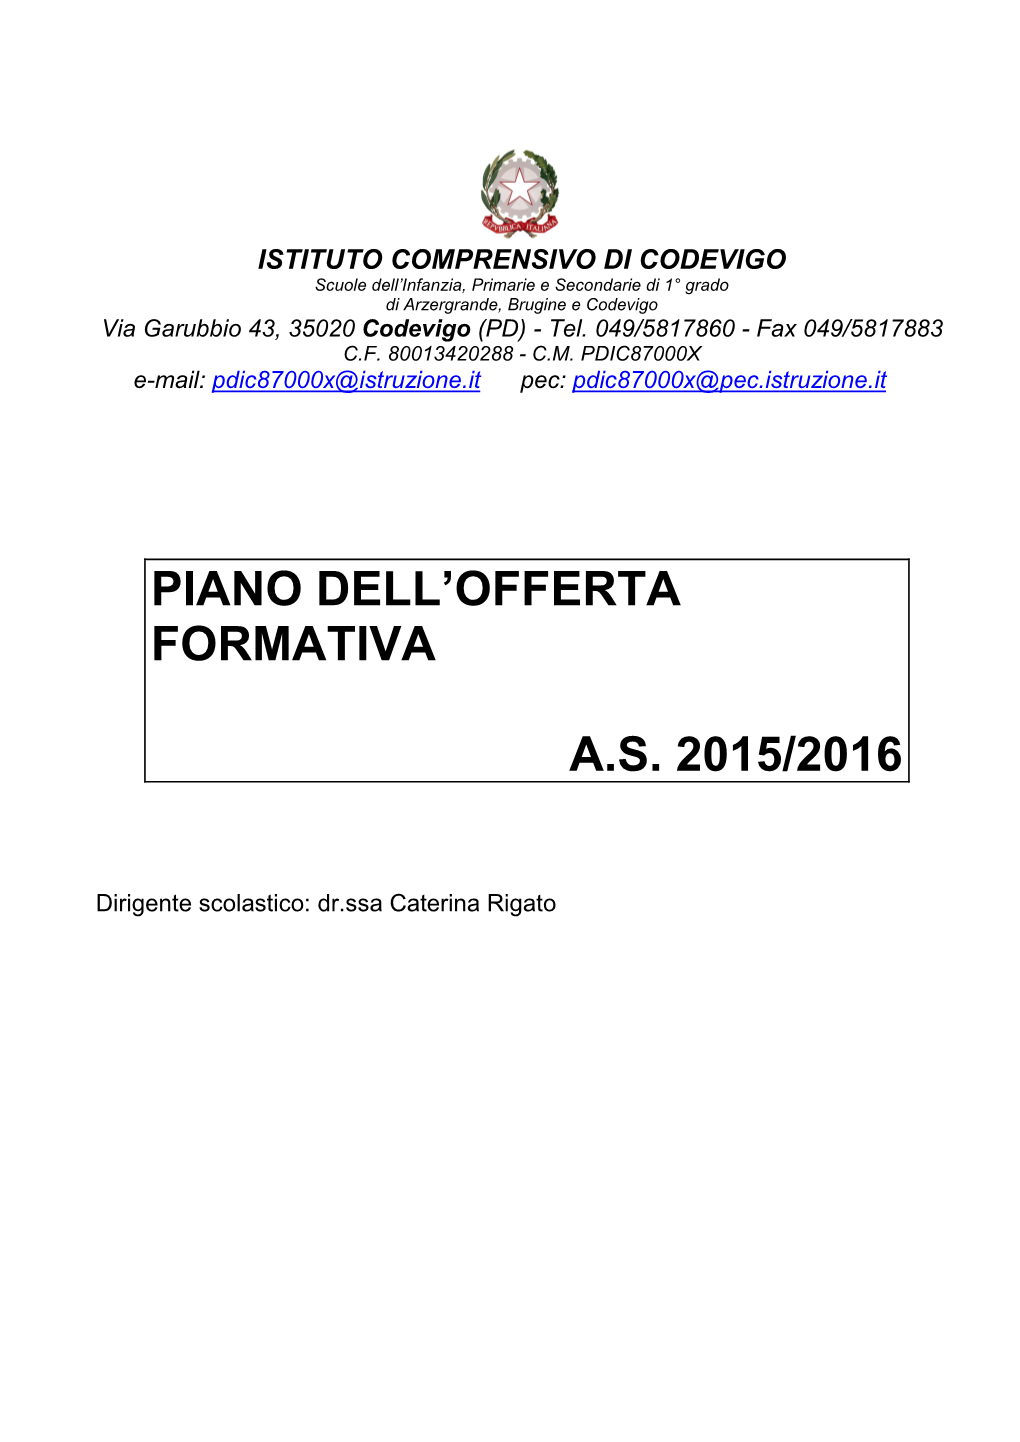 Piano Dell'offerta Formativa A.S. 2015/2016